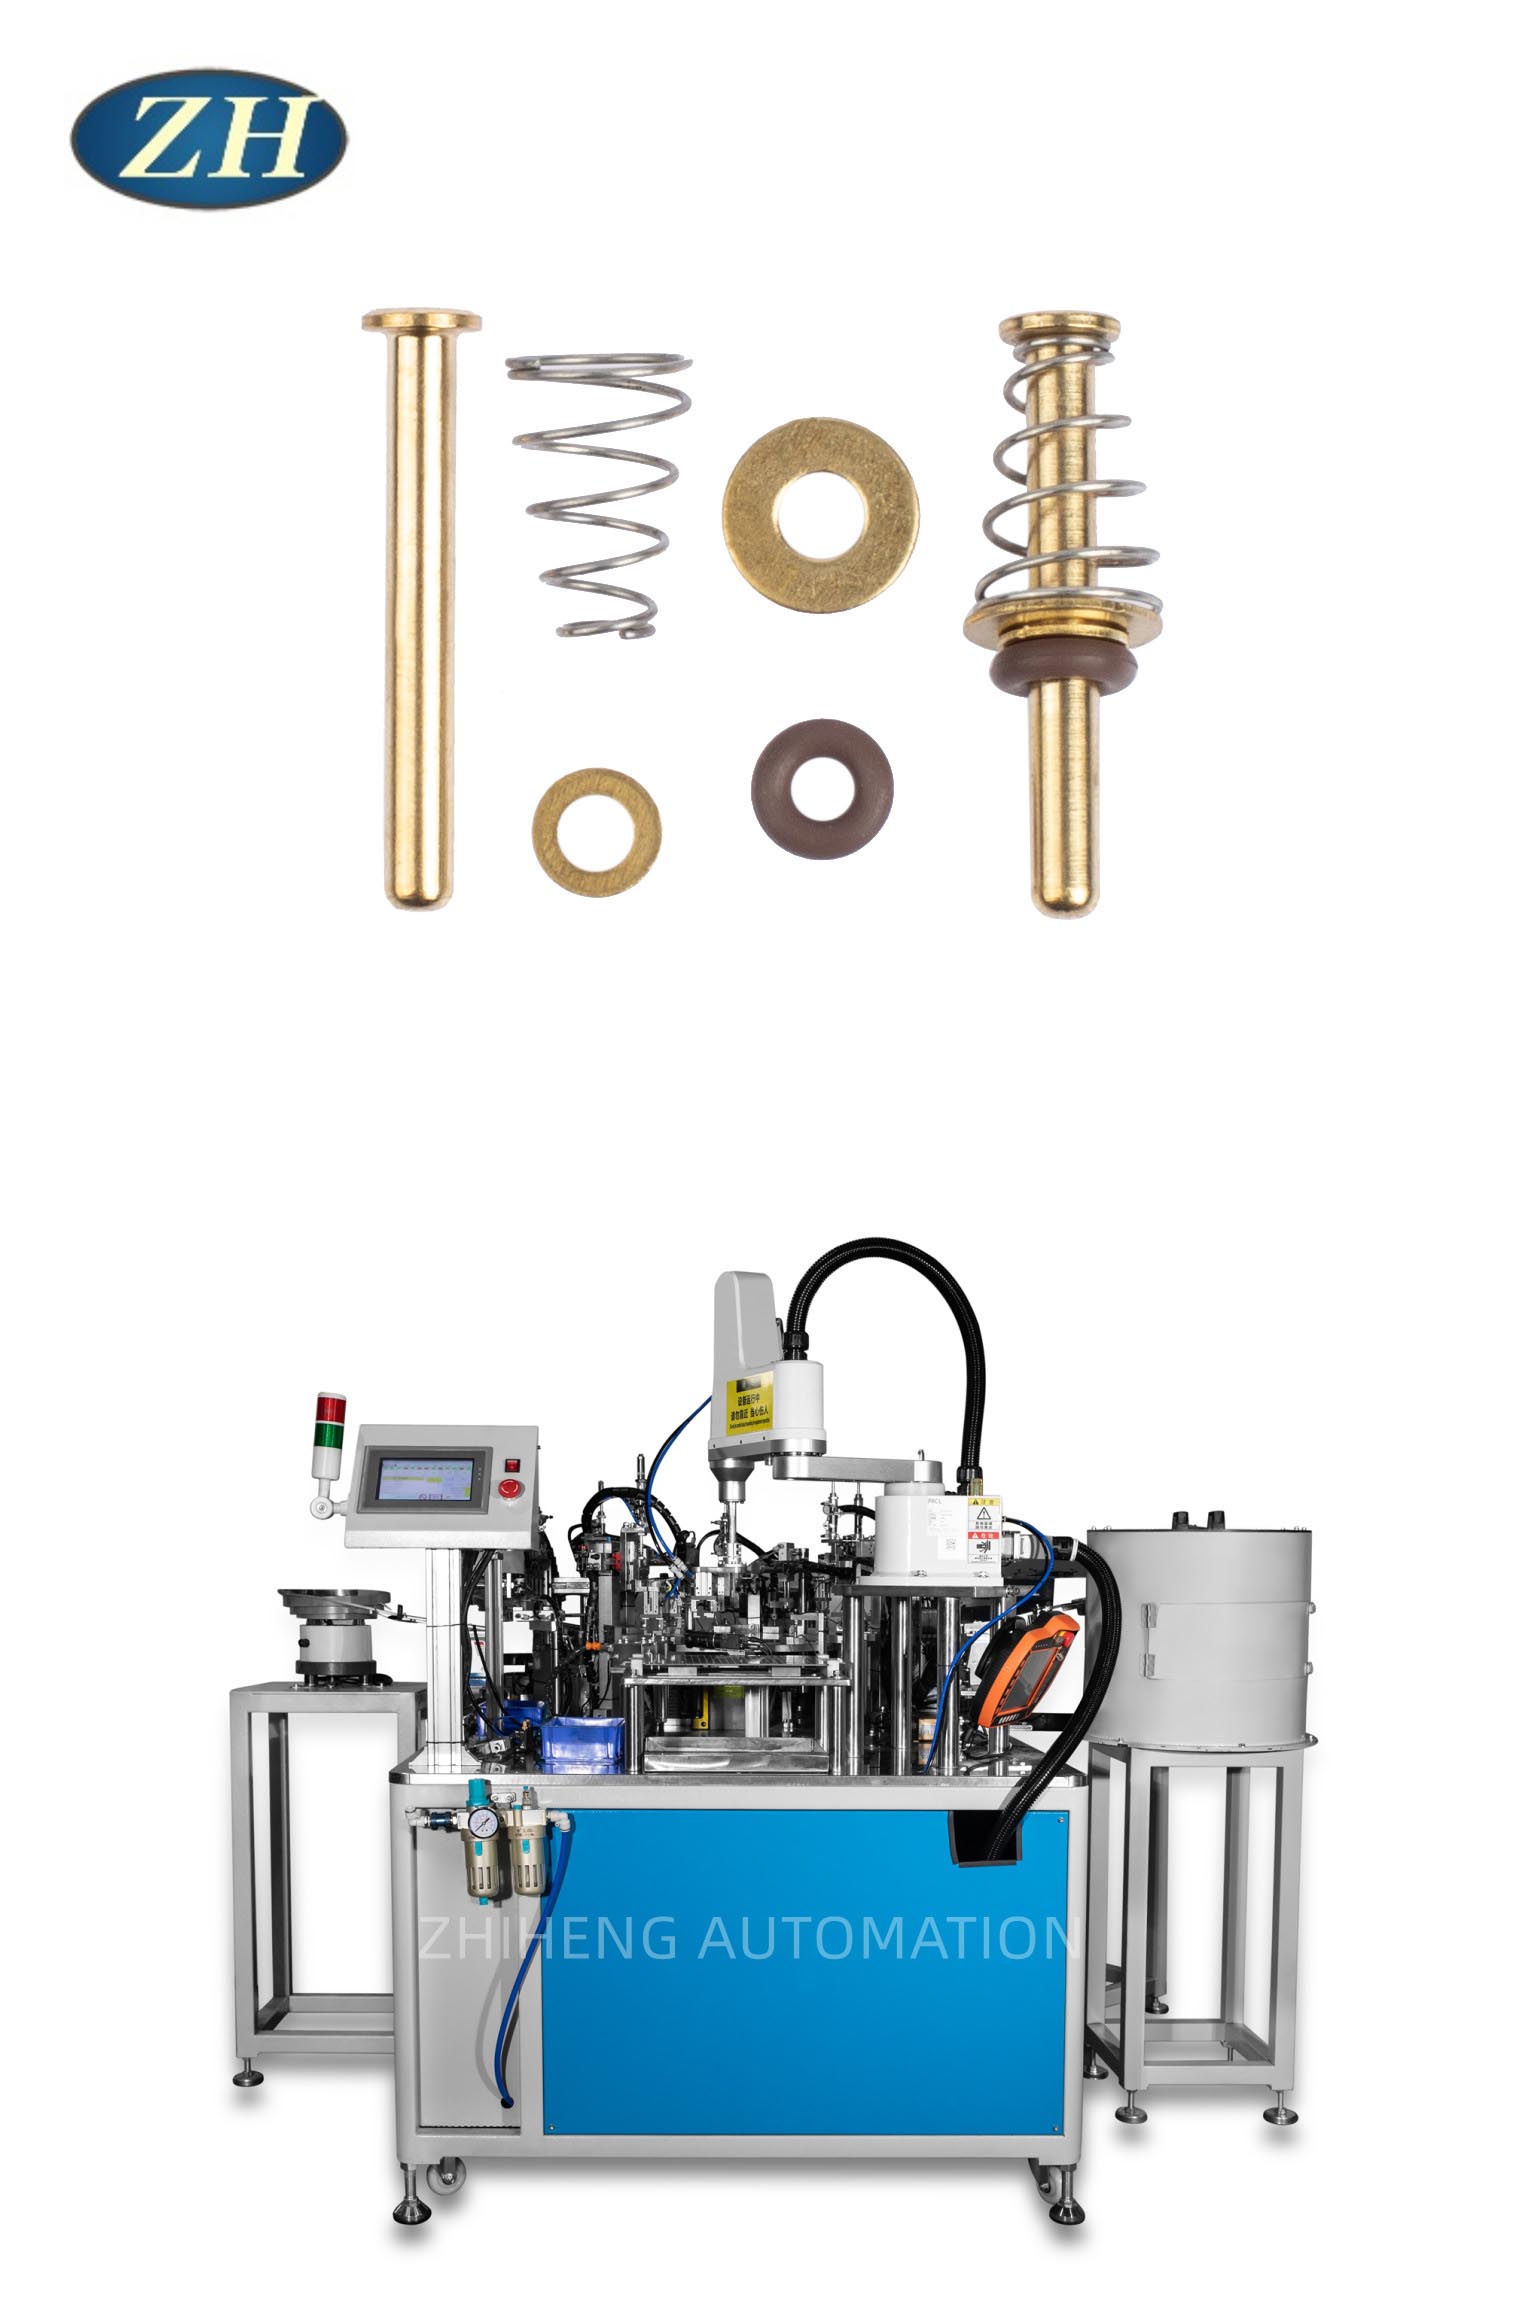 New faucet valve core assembly machine makes production more efficient